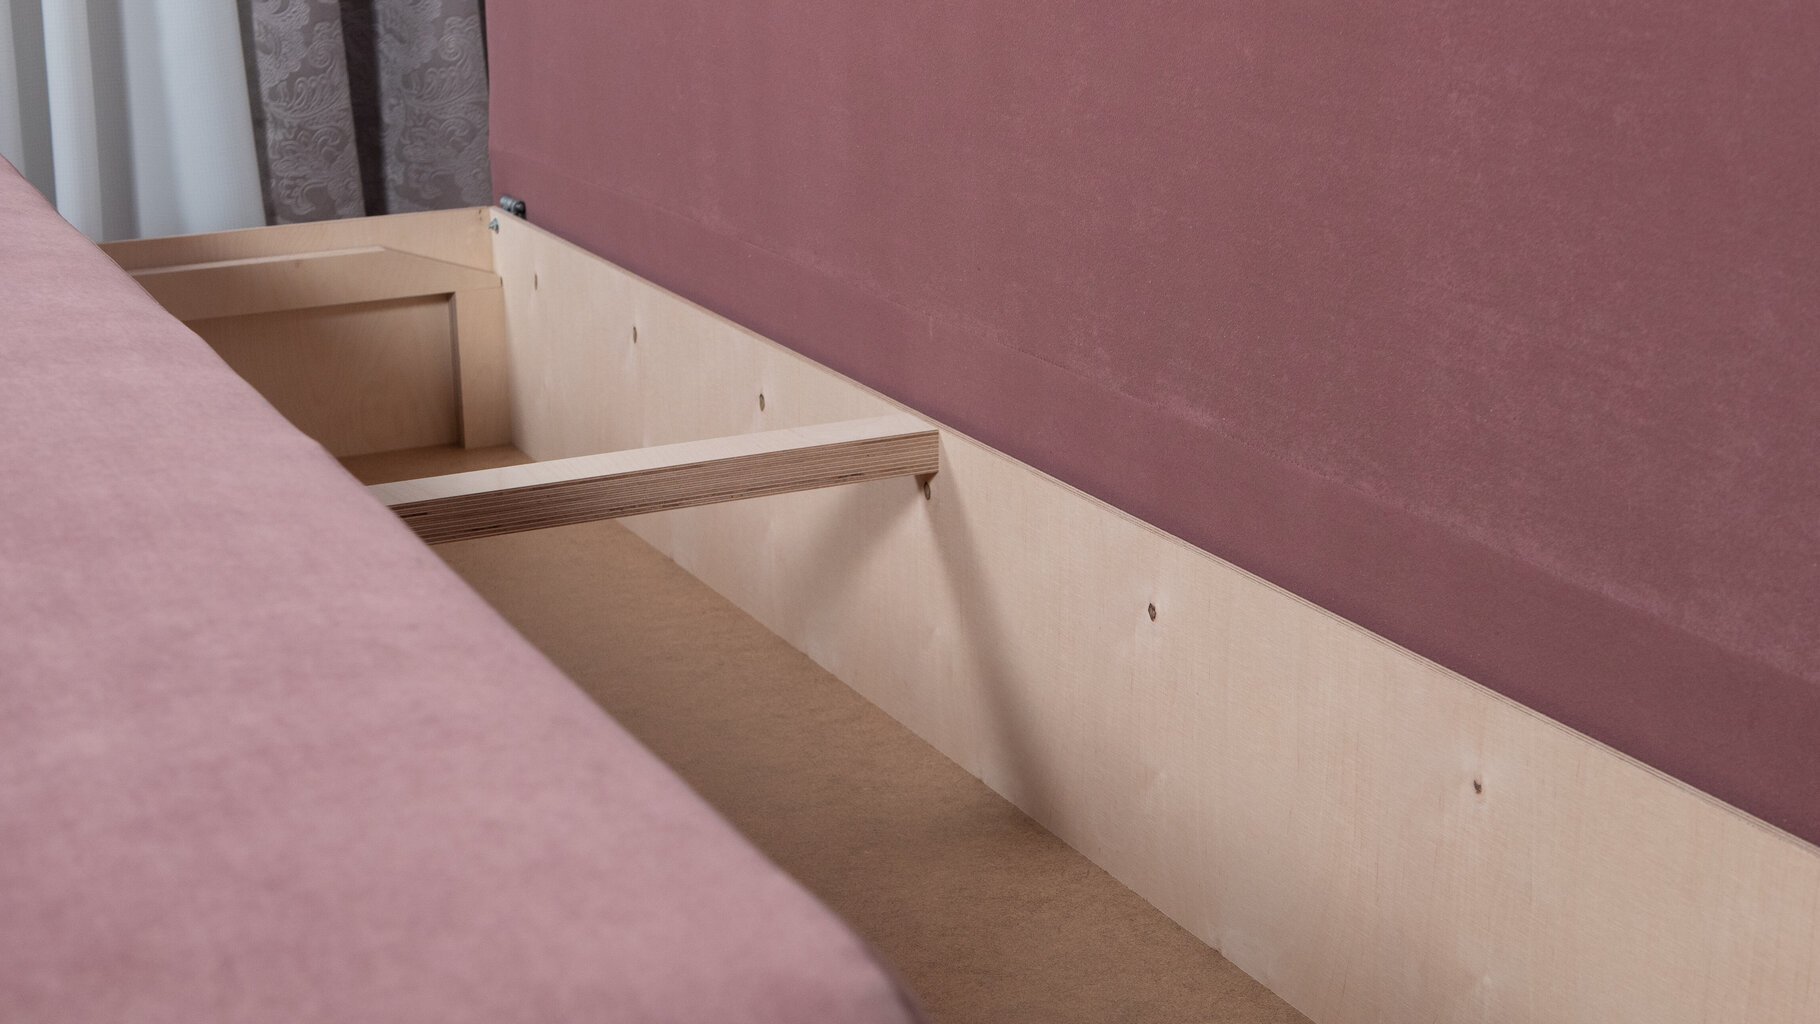 Sofa-lova Ovals, šviesiai rožinės spalvos kaina ir informacija | Sofos | pigu.lt